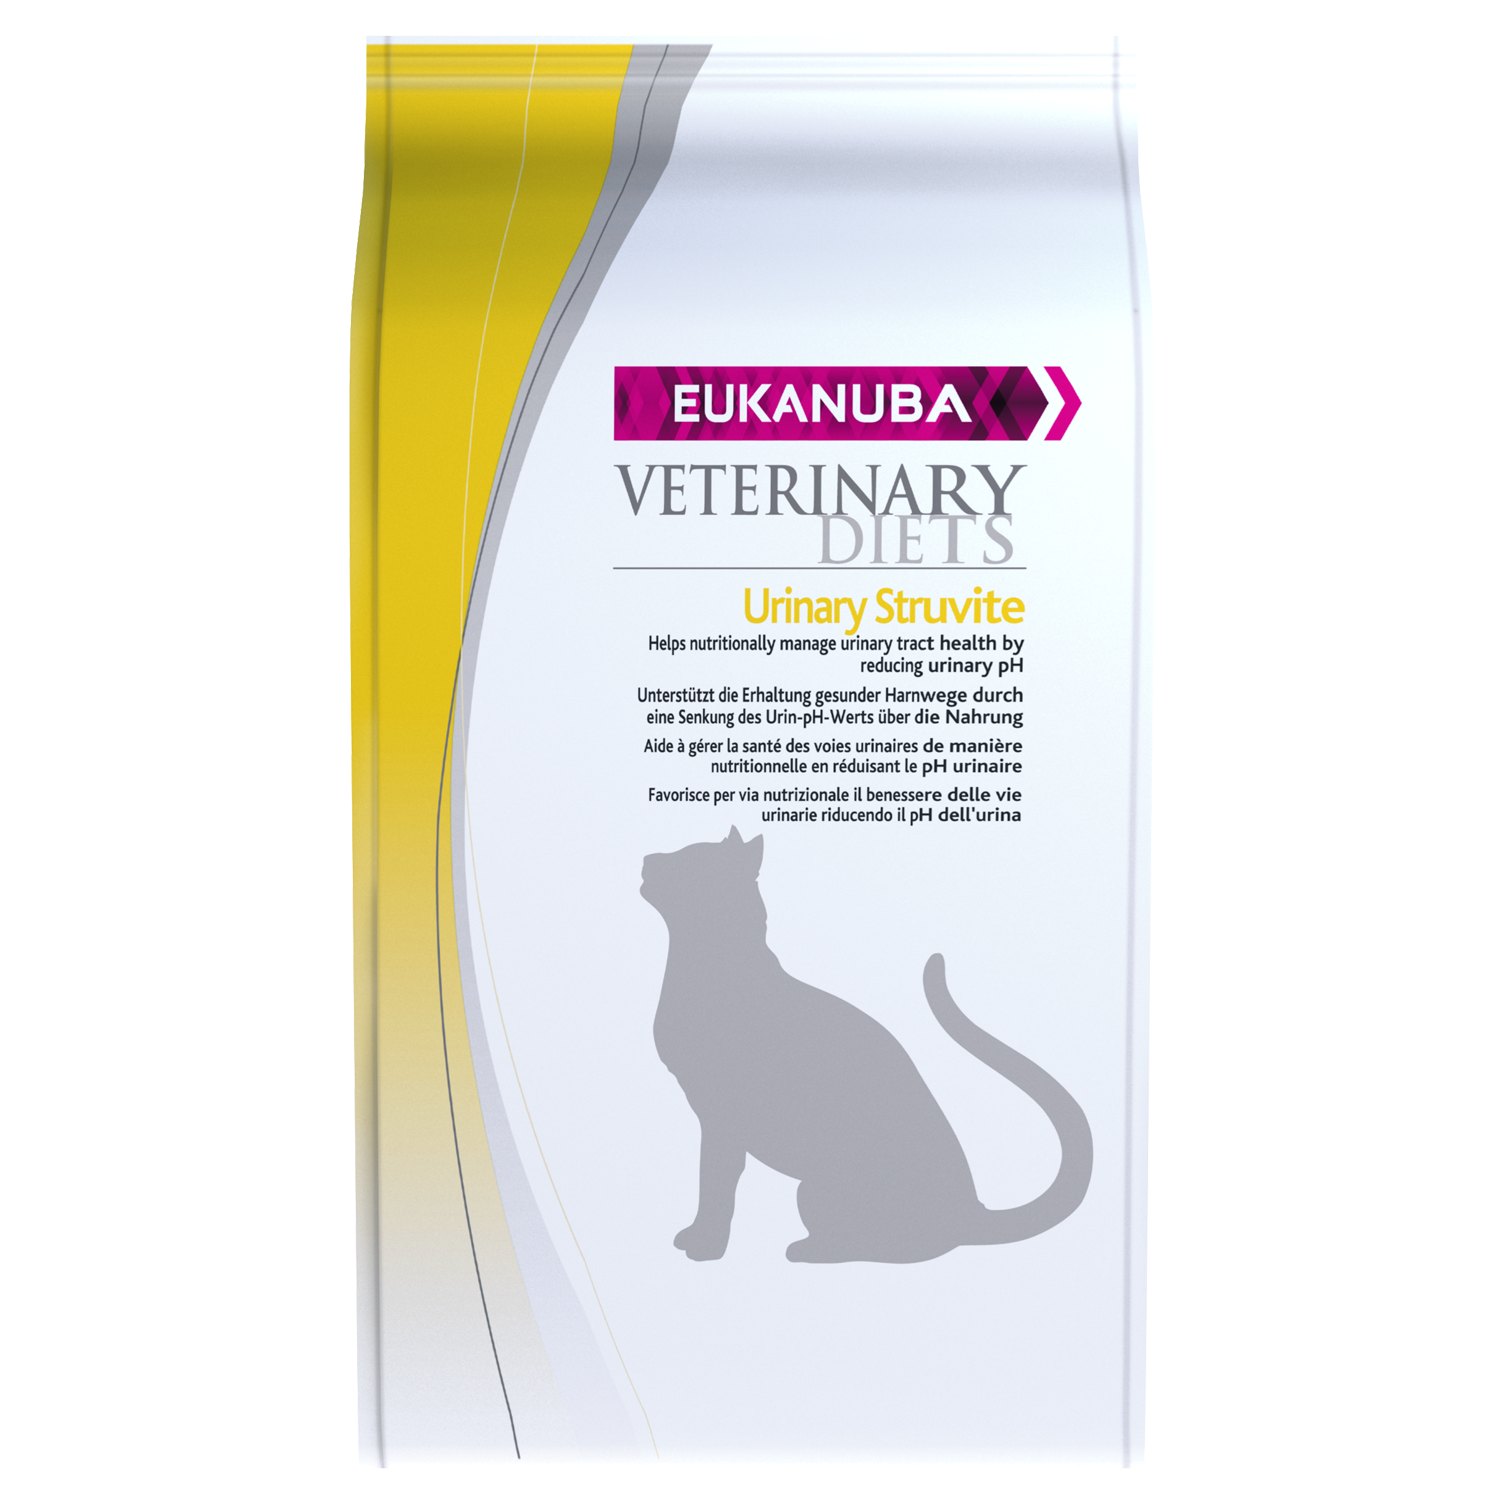 Корм для собак оксалаты. Эукануба Интестинал Eukanuba intestinal для кошек. Eukanuba Urinary oxalate кошек. Eukanuba для кошек Уринари. Eukanuba oxalate Urinary Formula для собак.